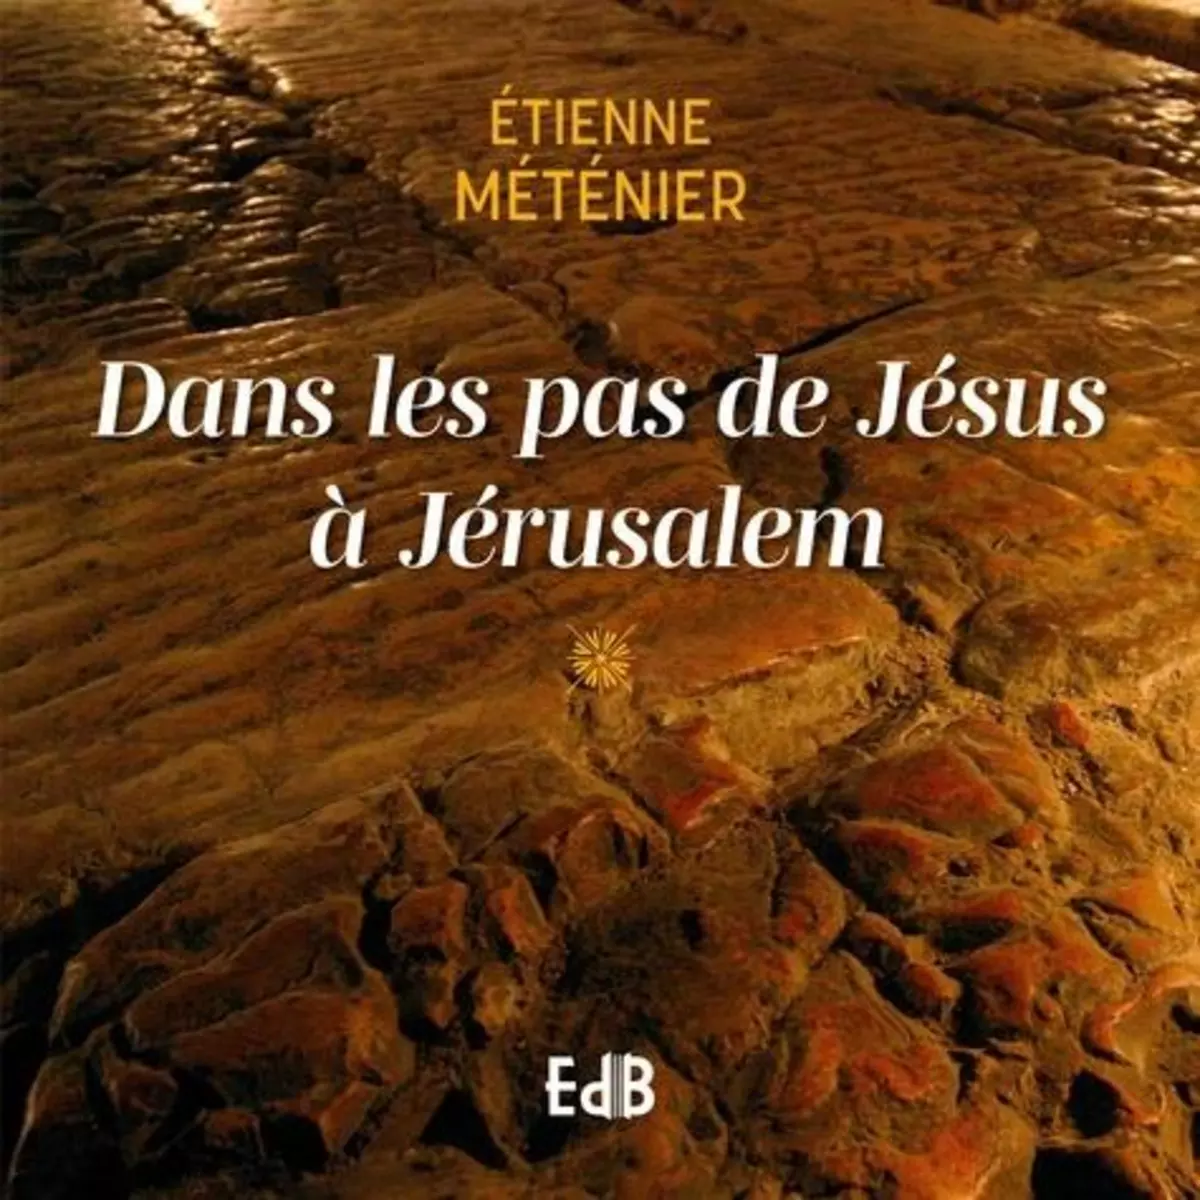  DANS LES PAS DE JESUS A JERUSALEM, Metenier Etienne